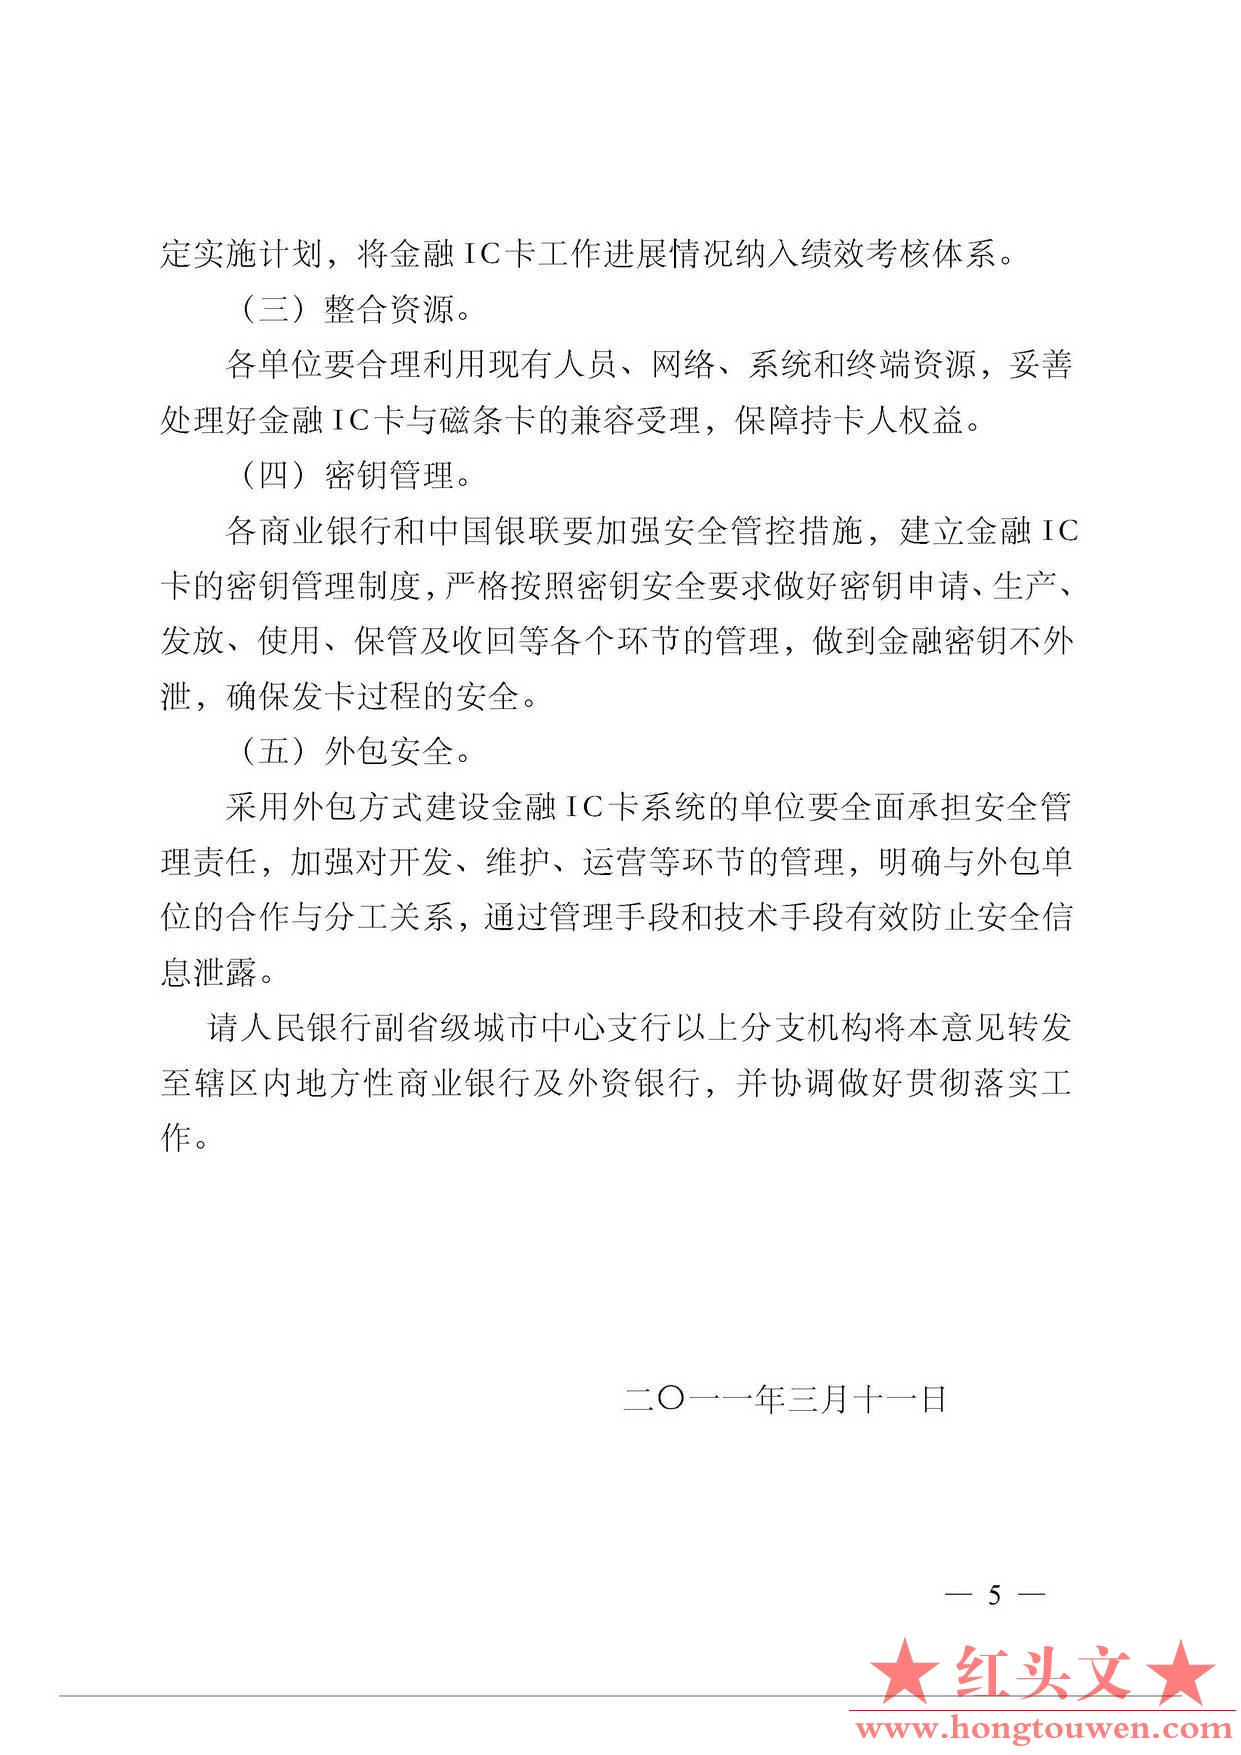 银发[2011]64号-中国人民银行关于推进金融IC卡应用工作的意见_页面_5.jpg.jpg